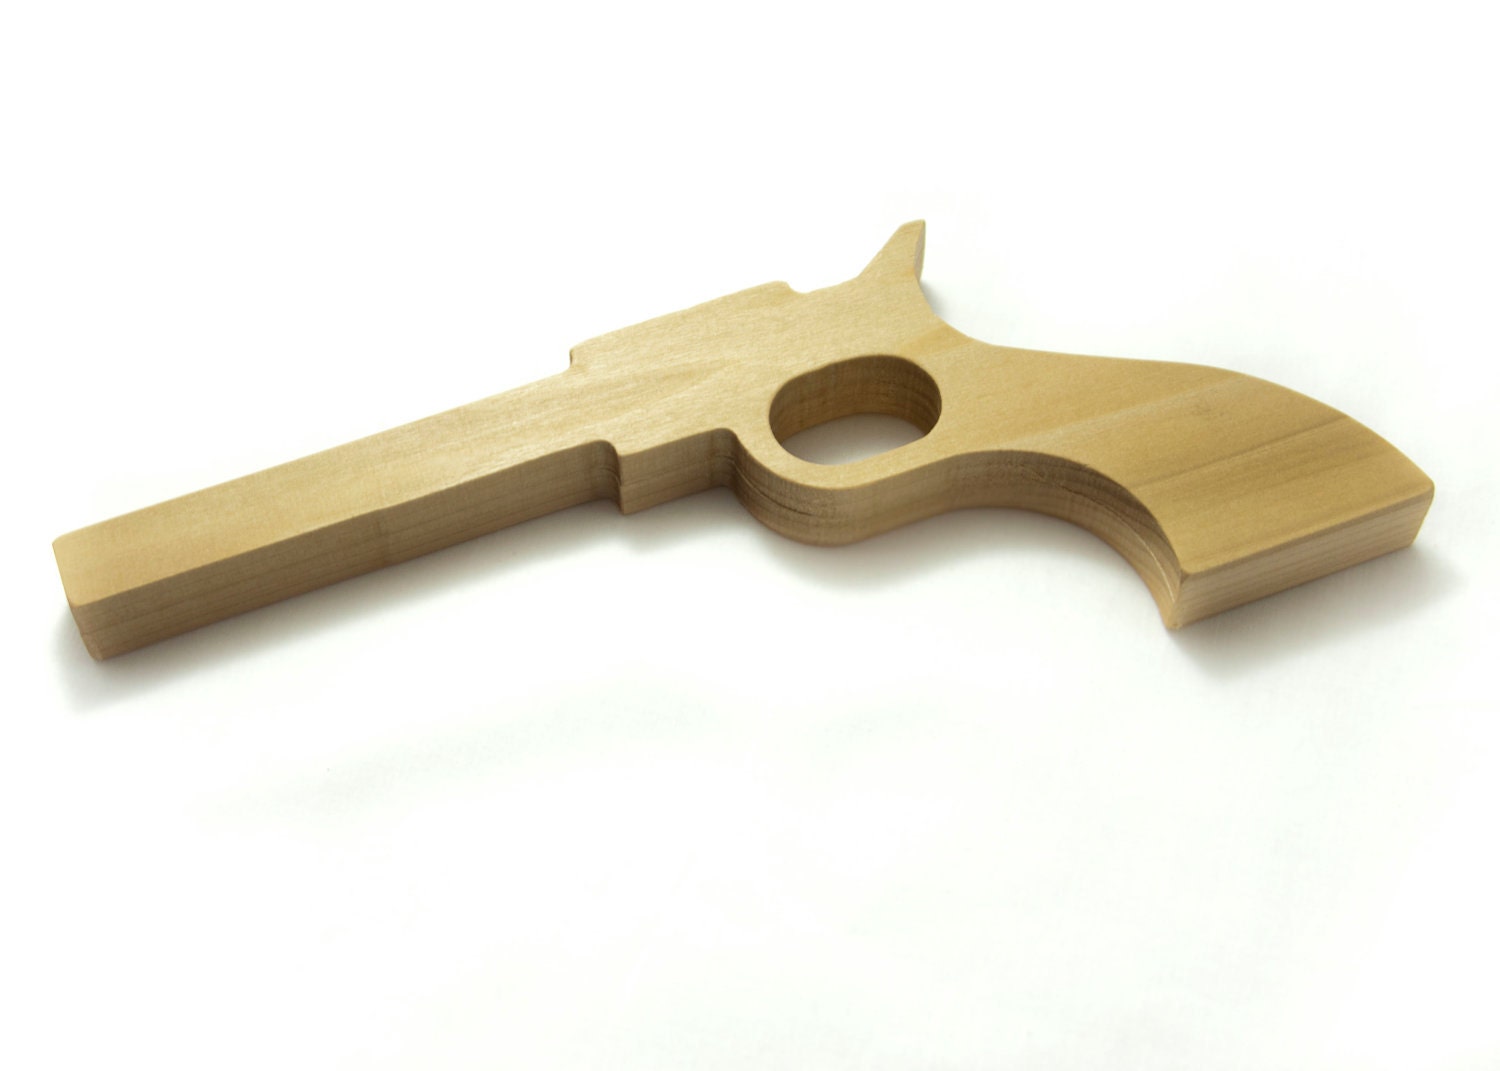 Wooden Toy Pistol Gun